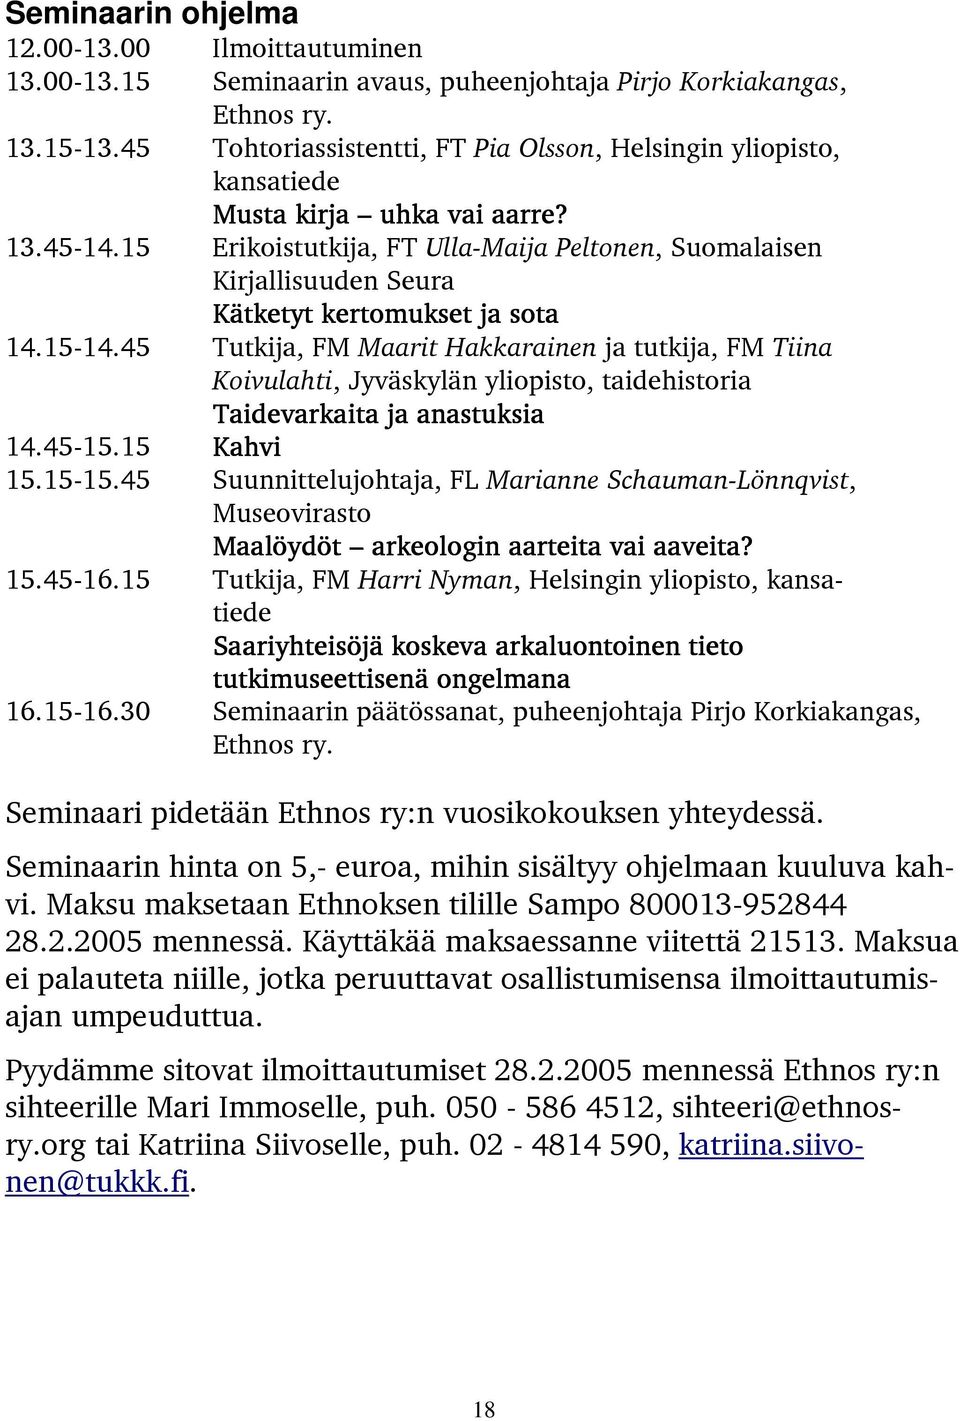 15 Erikoistutkija, FT Ulla-Maija Peltonen, Suomalaisen Kirjallisuuden Seura Kätketyt kertomukset ja sota 14.15-14.